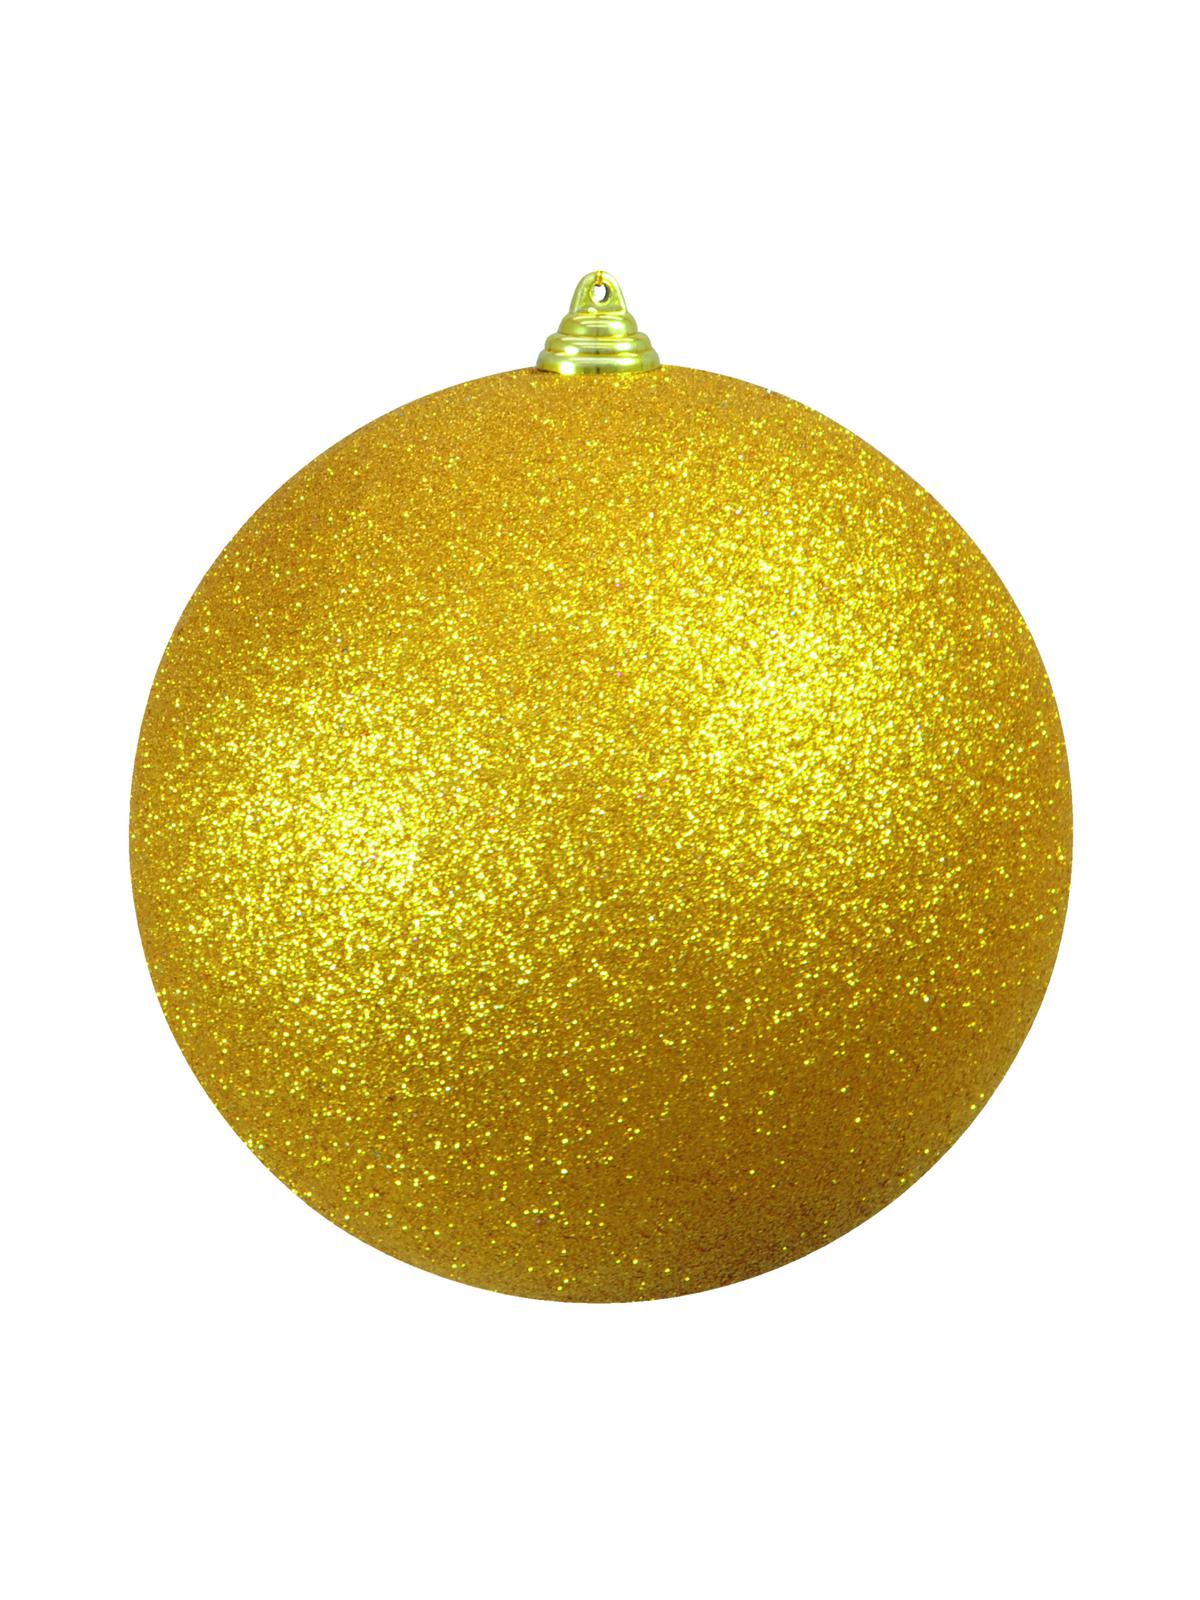 Vánoční ozdoba 20cm, zlatá koule s glitry